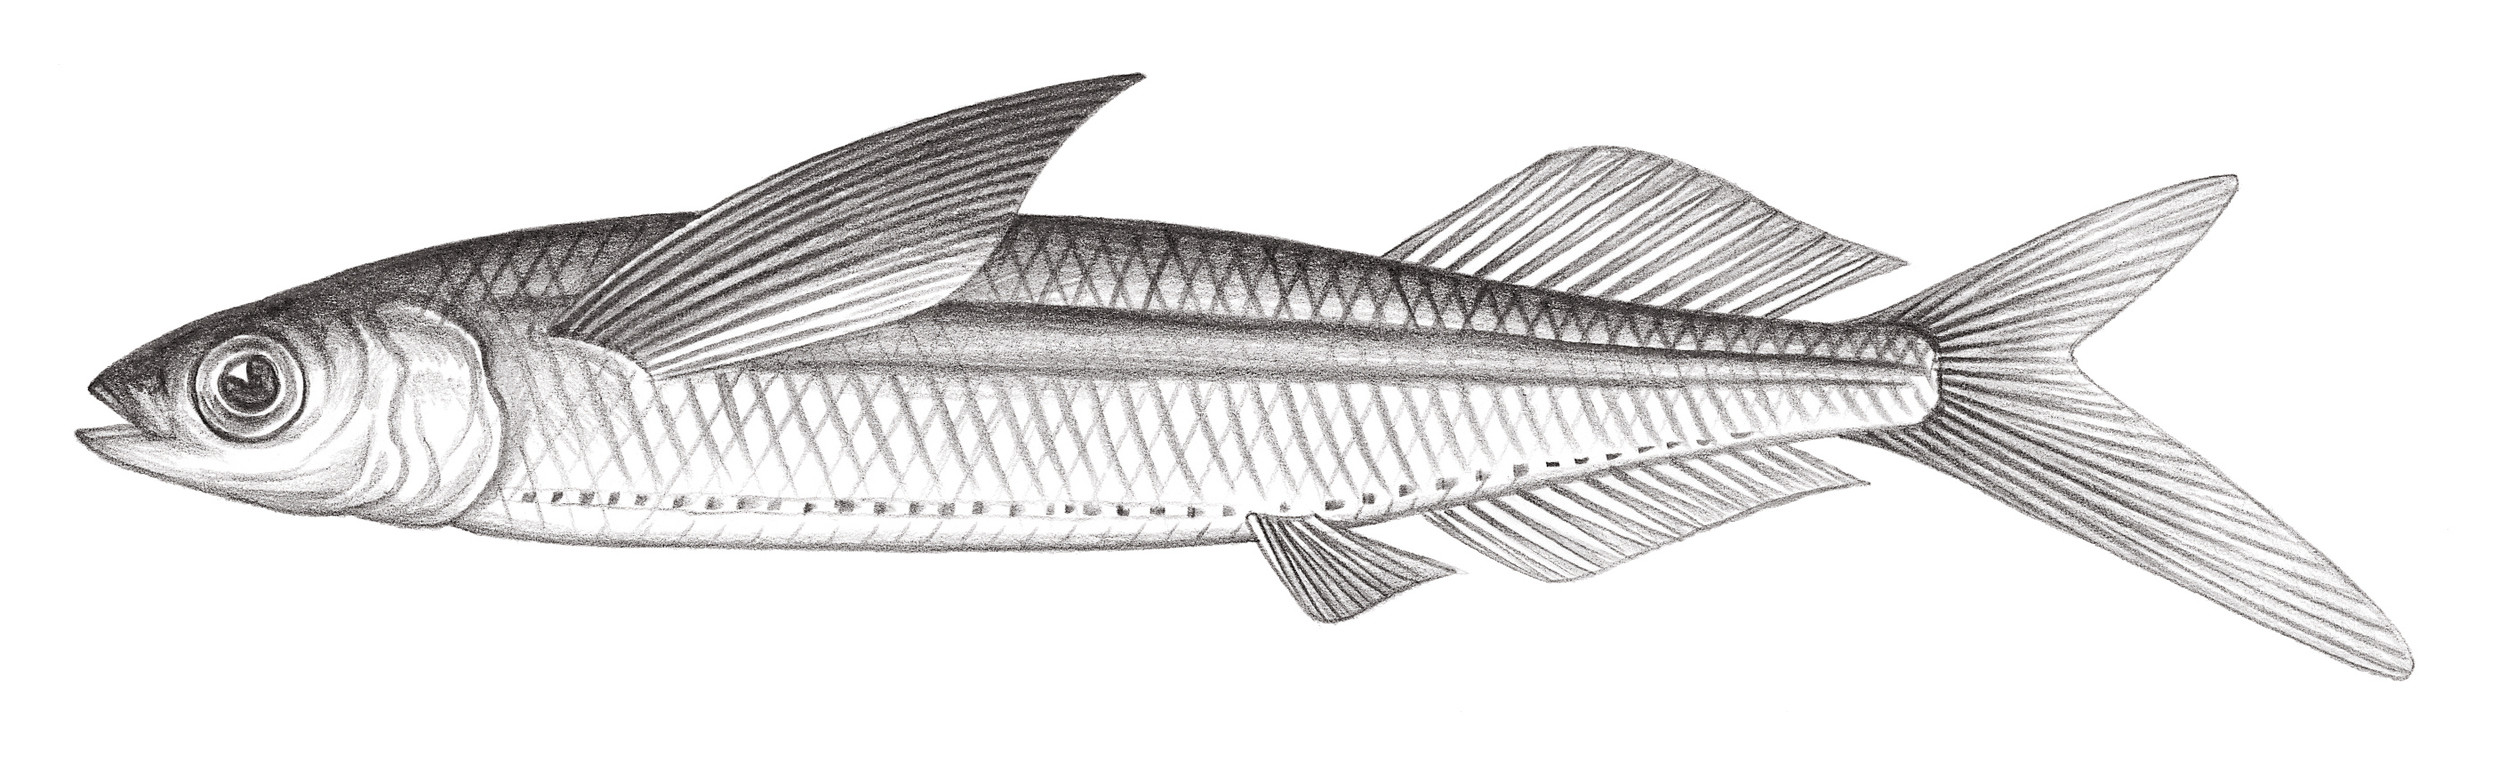 739.	白鰭飛鱵 Oxyporhamphus micropterus micropterus (Valenciennes, 1847)